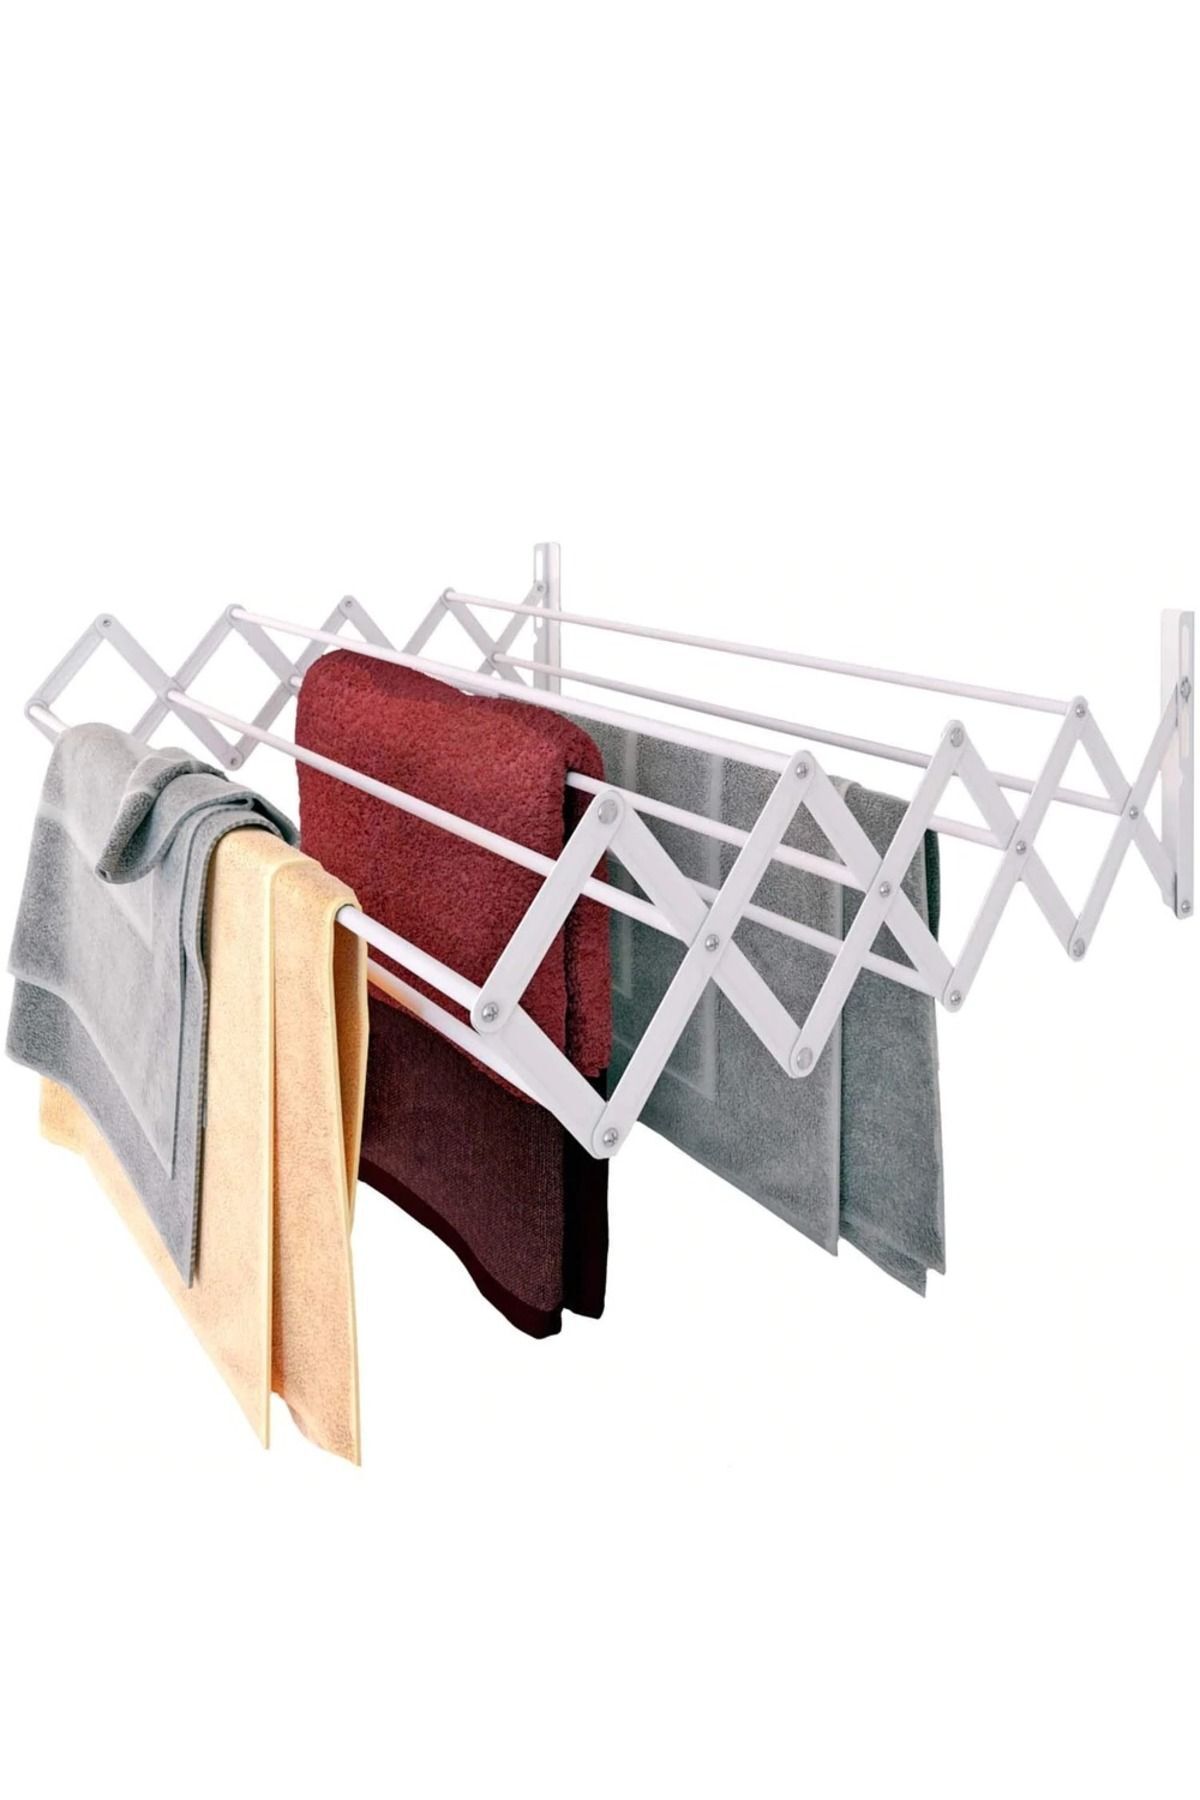 HOMAPEX Akordiyon Tipi Katlanır Çamaşır Kurutma Askısı 55 Cm 8 Askılı Balkon Çamaşır Kurutma Askısı